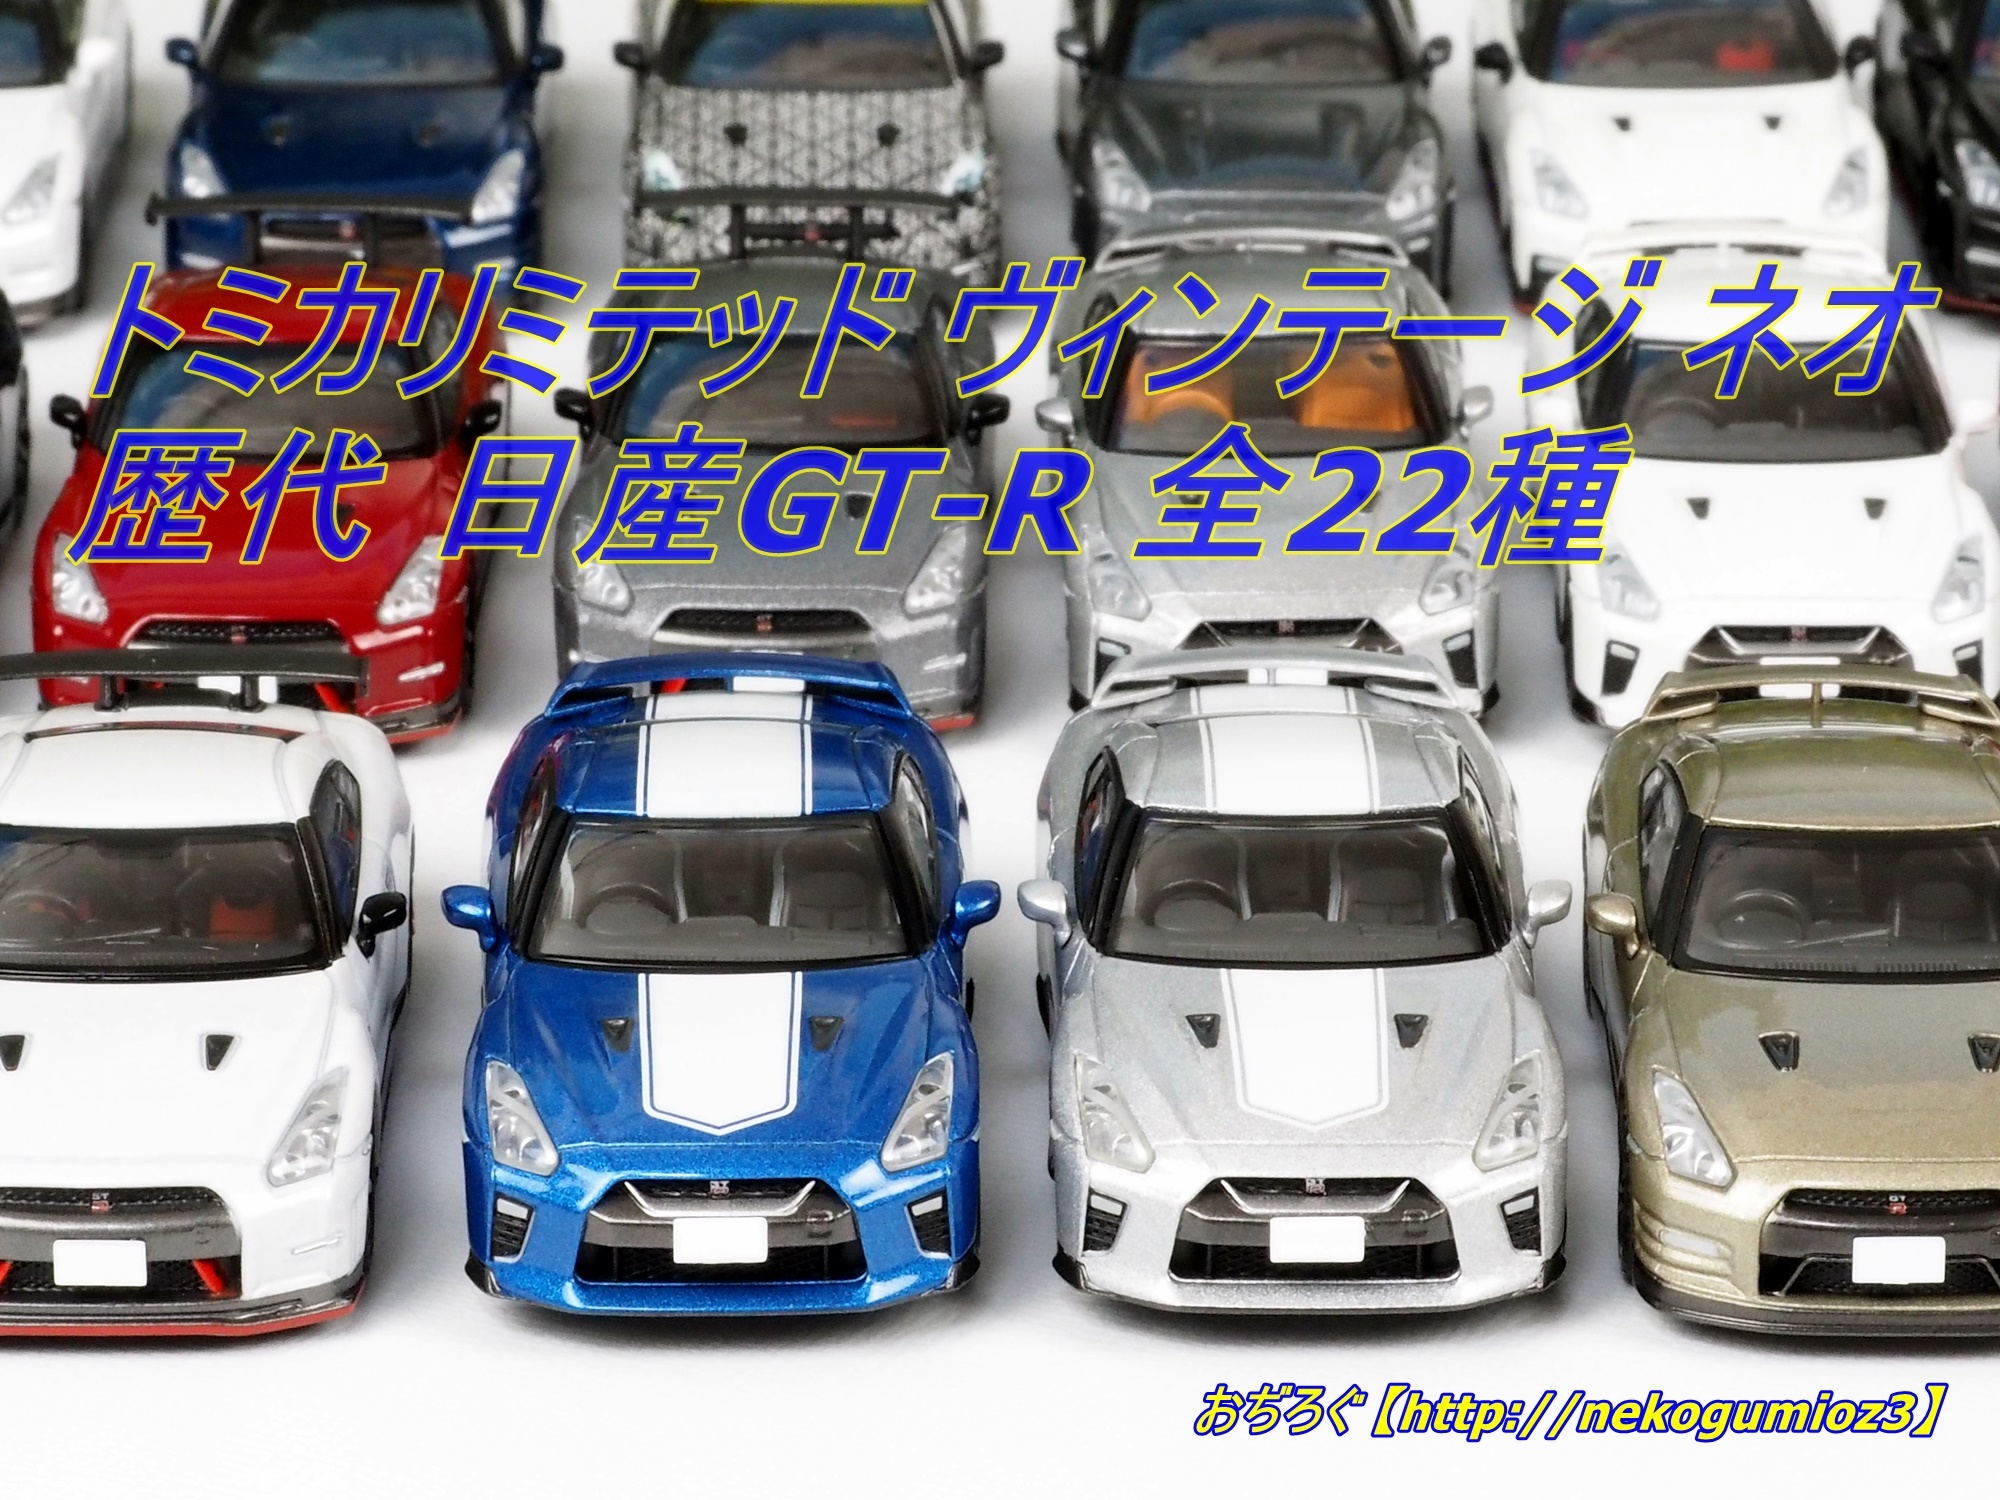 ブラック系見事な創造力 トミカリミテッド 日産GT-R コレクション6種フルコンプ ミニカー  おもちゃブラック系￥7,992-laeknavaktin.is